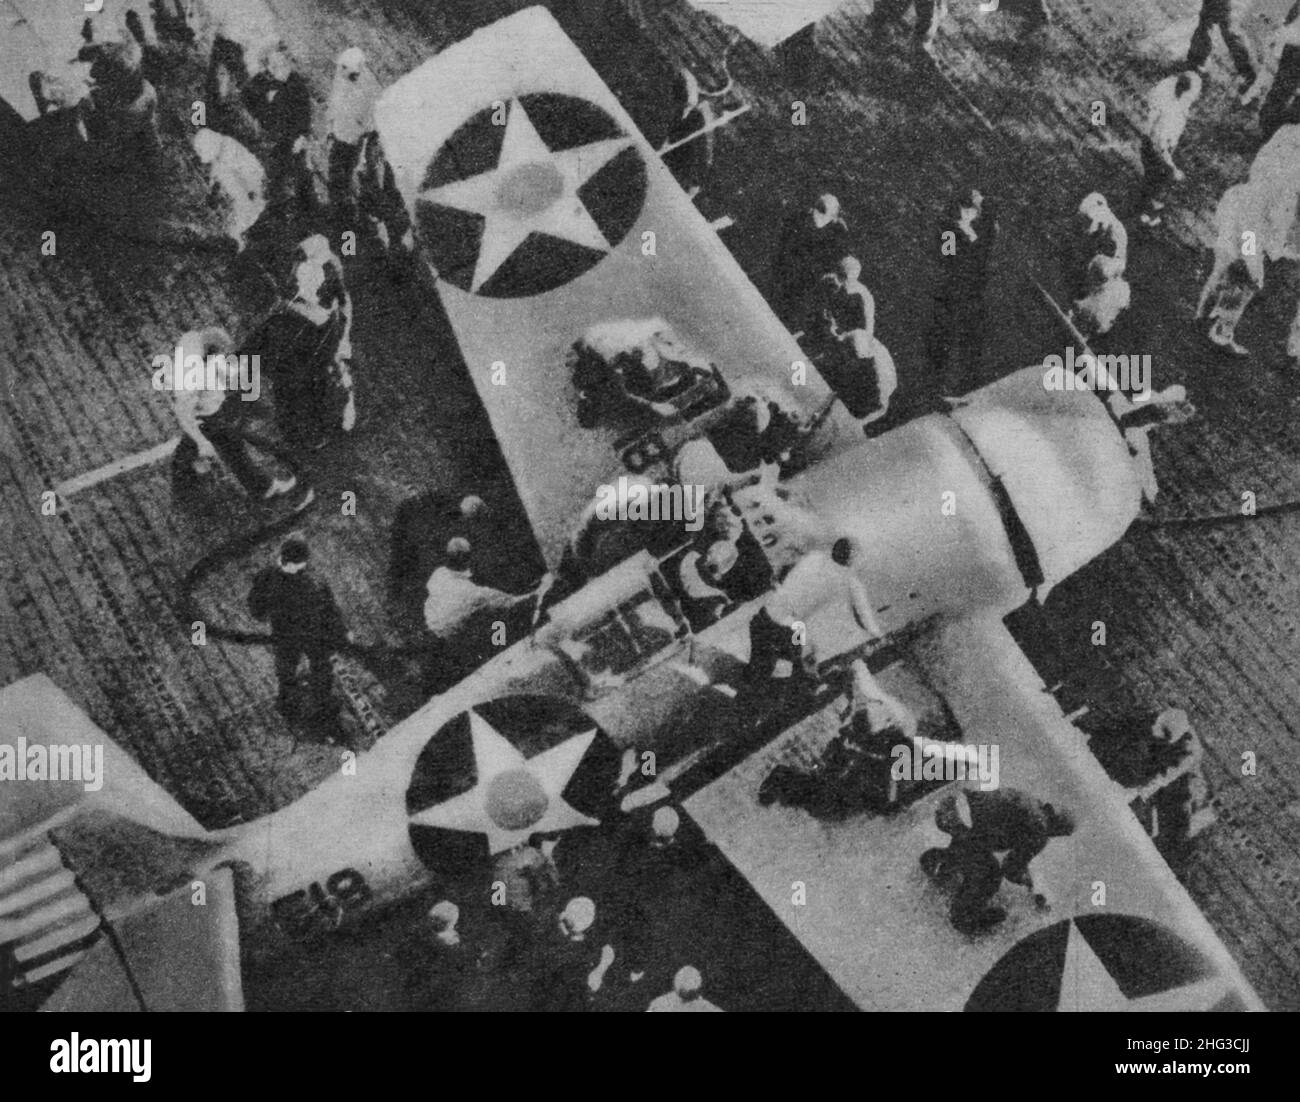 Ein altes Foto eines amerikanischen Flugzeugs, das auf japanischen Stützpunkten im Pazifik eingesetzt wurde, kehrt zum Tanken an seinen Flugzeugträger zurück. Ein spezialisiertes Team Stockfoto